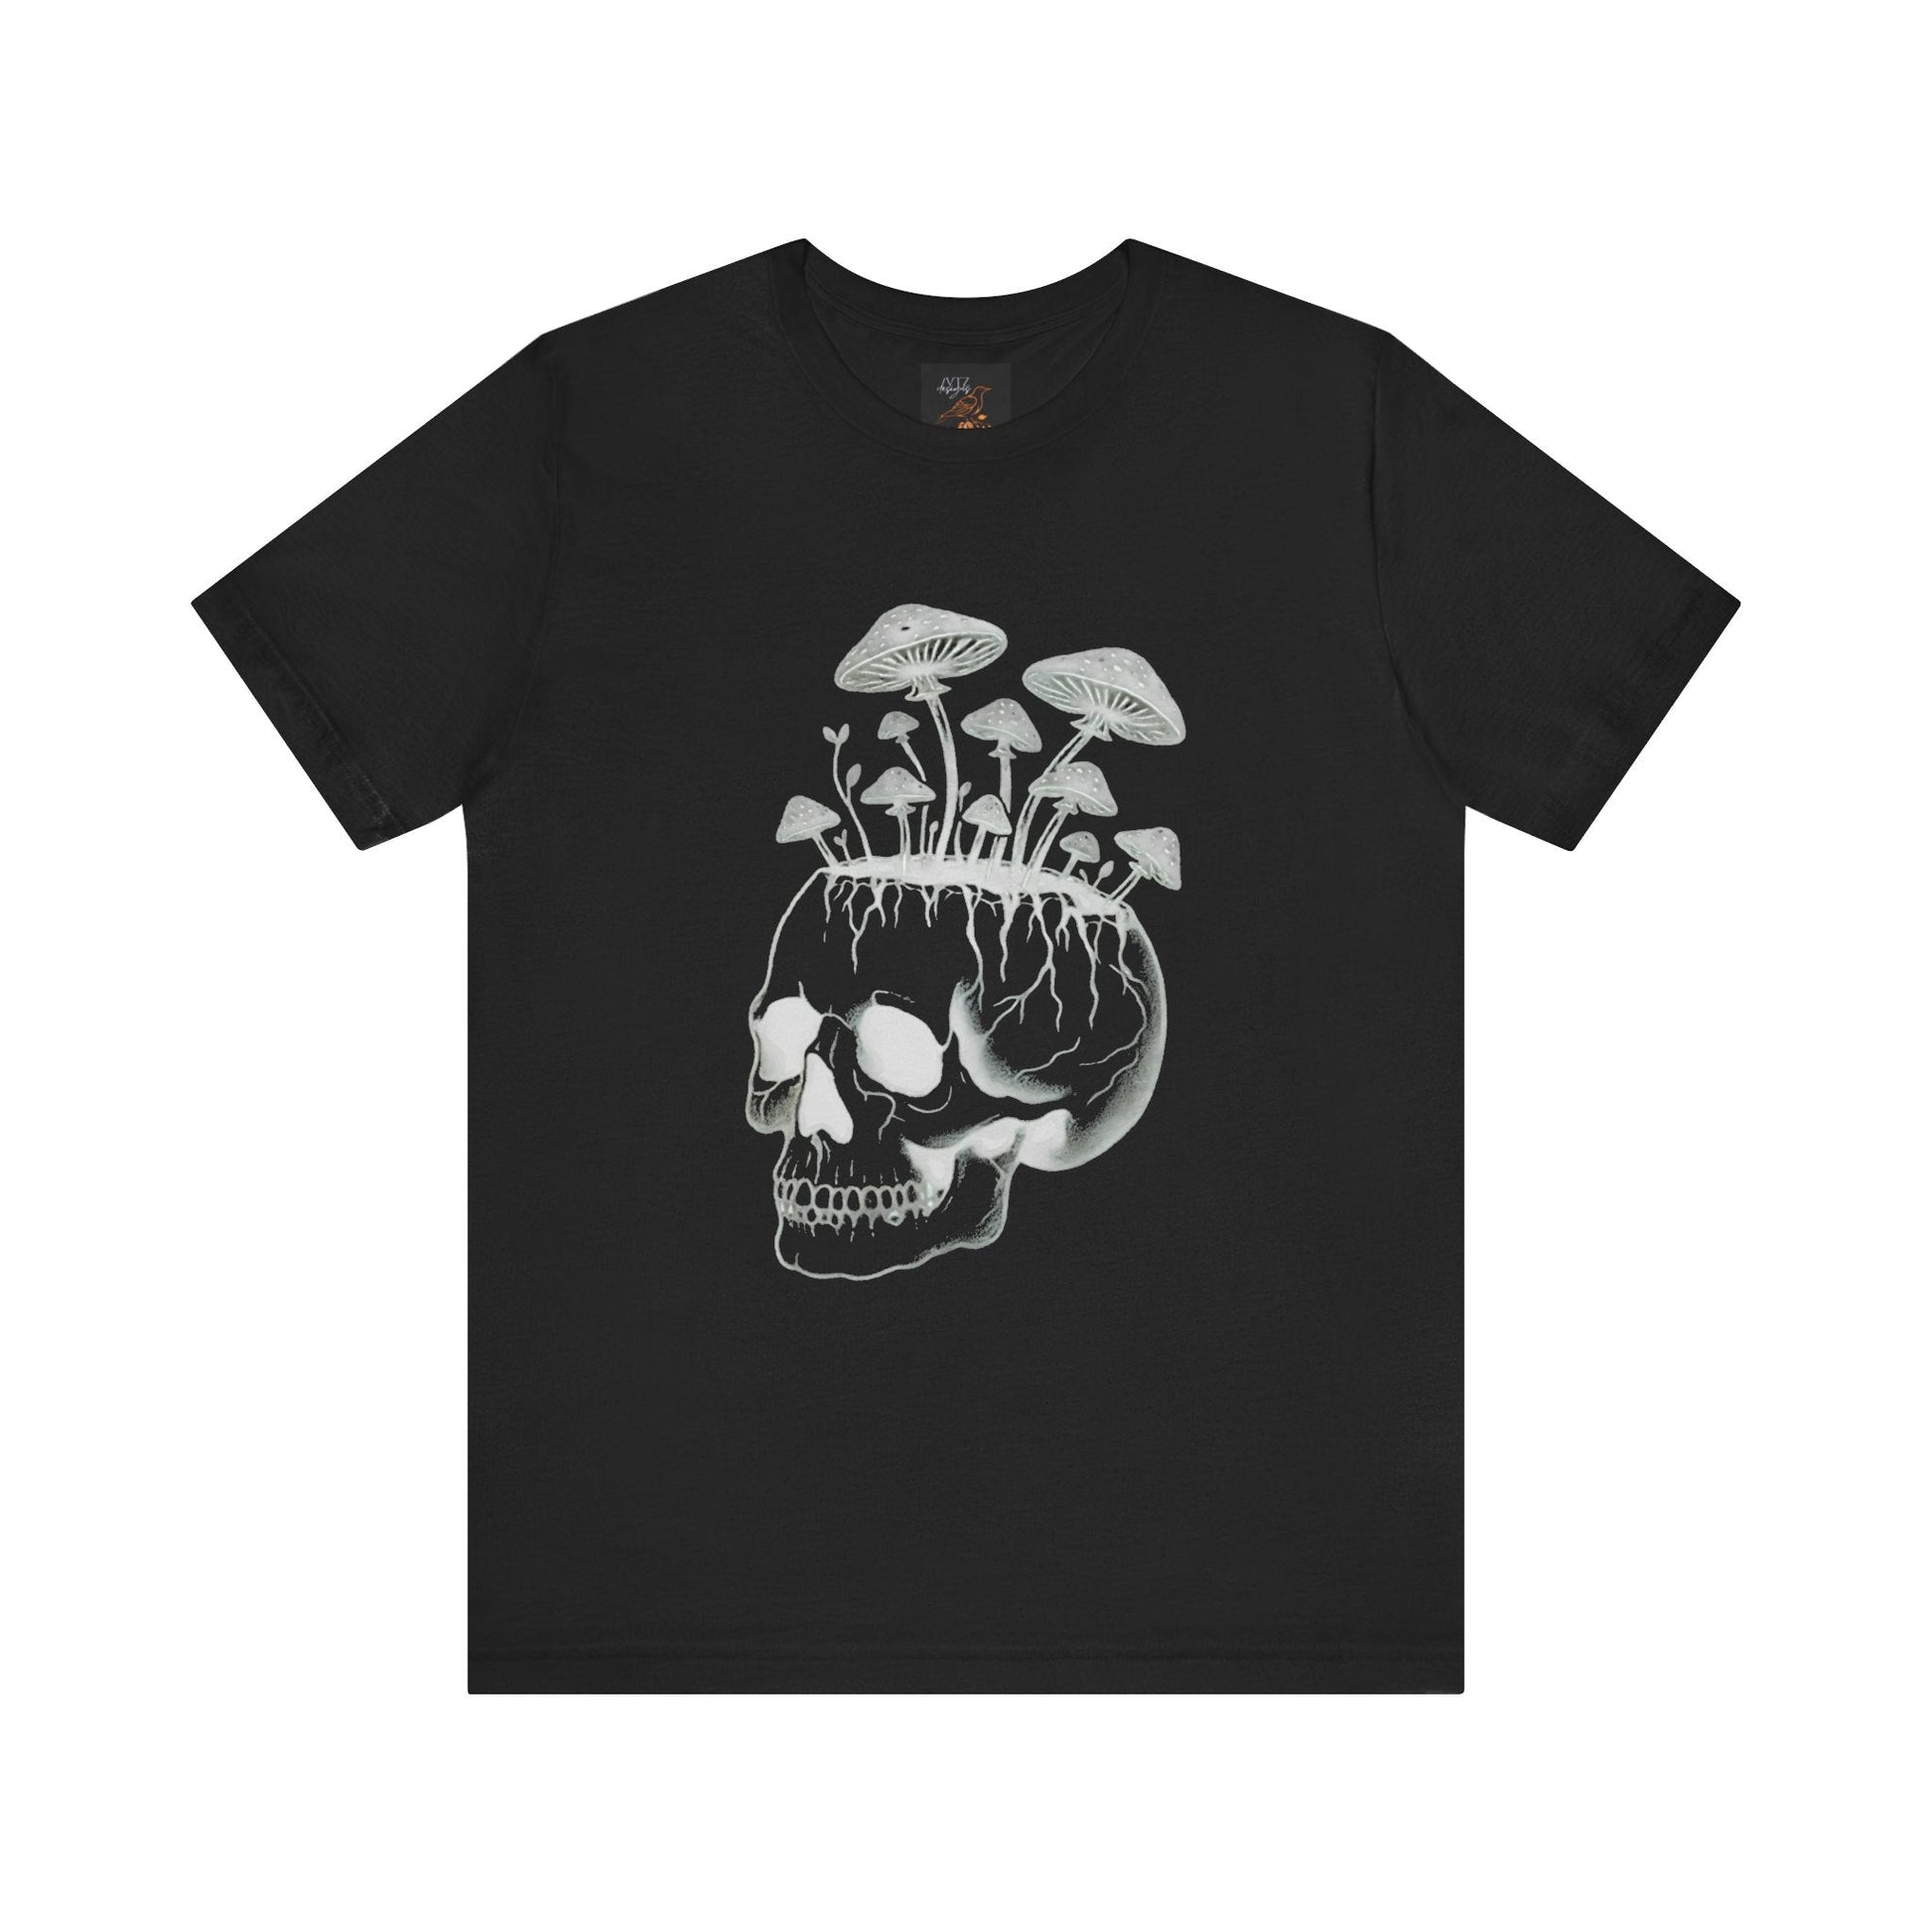 Skull and Mushrooms Tee ShirtT - ShirtVTZdesignsBlackXSclothingcottage corecottagecore